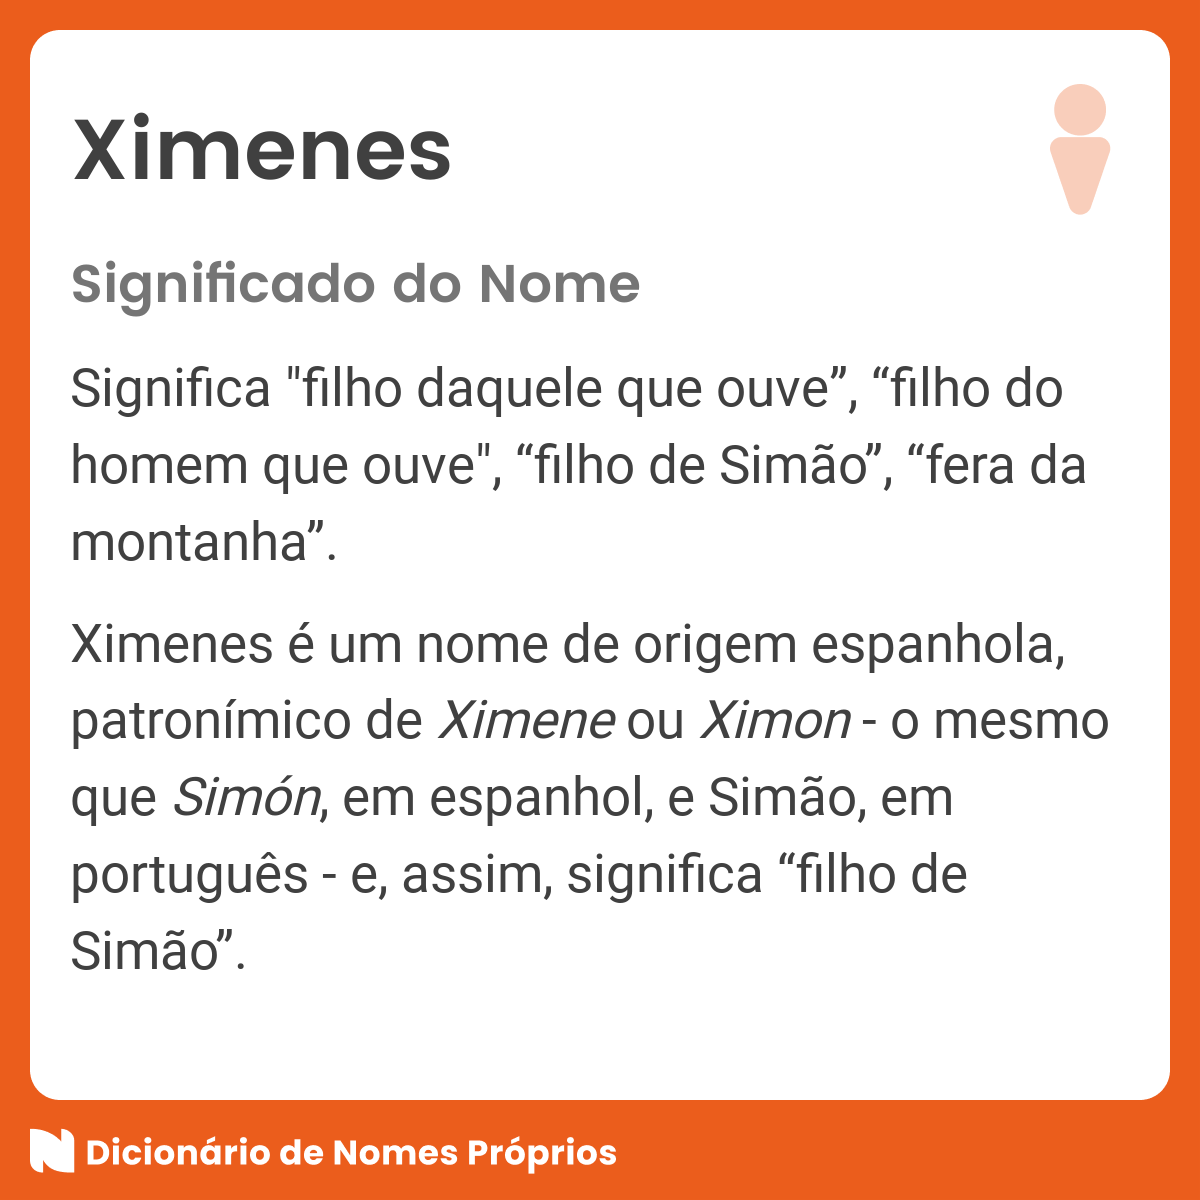 👪 → Qual a história e origem do sobrenome e família Ximenes?